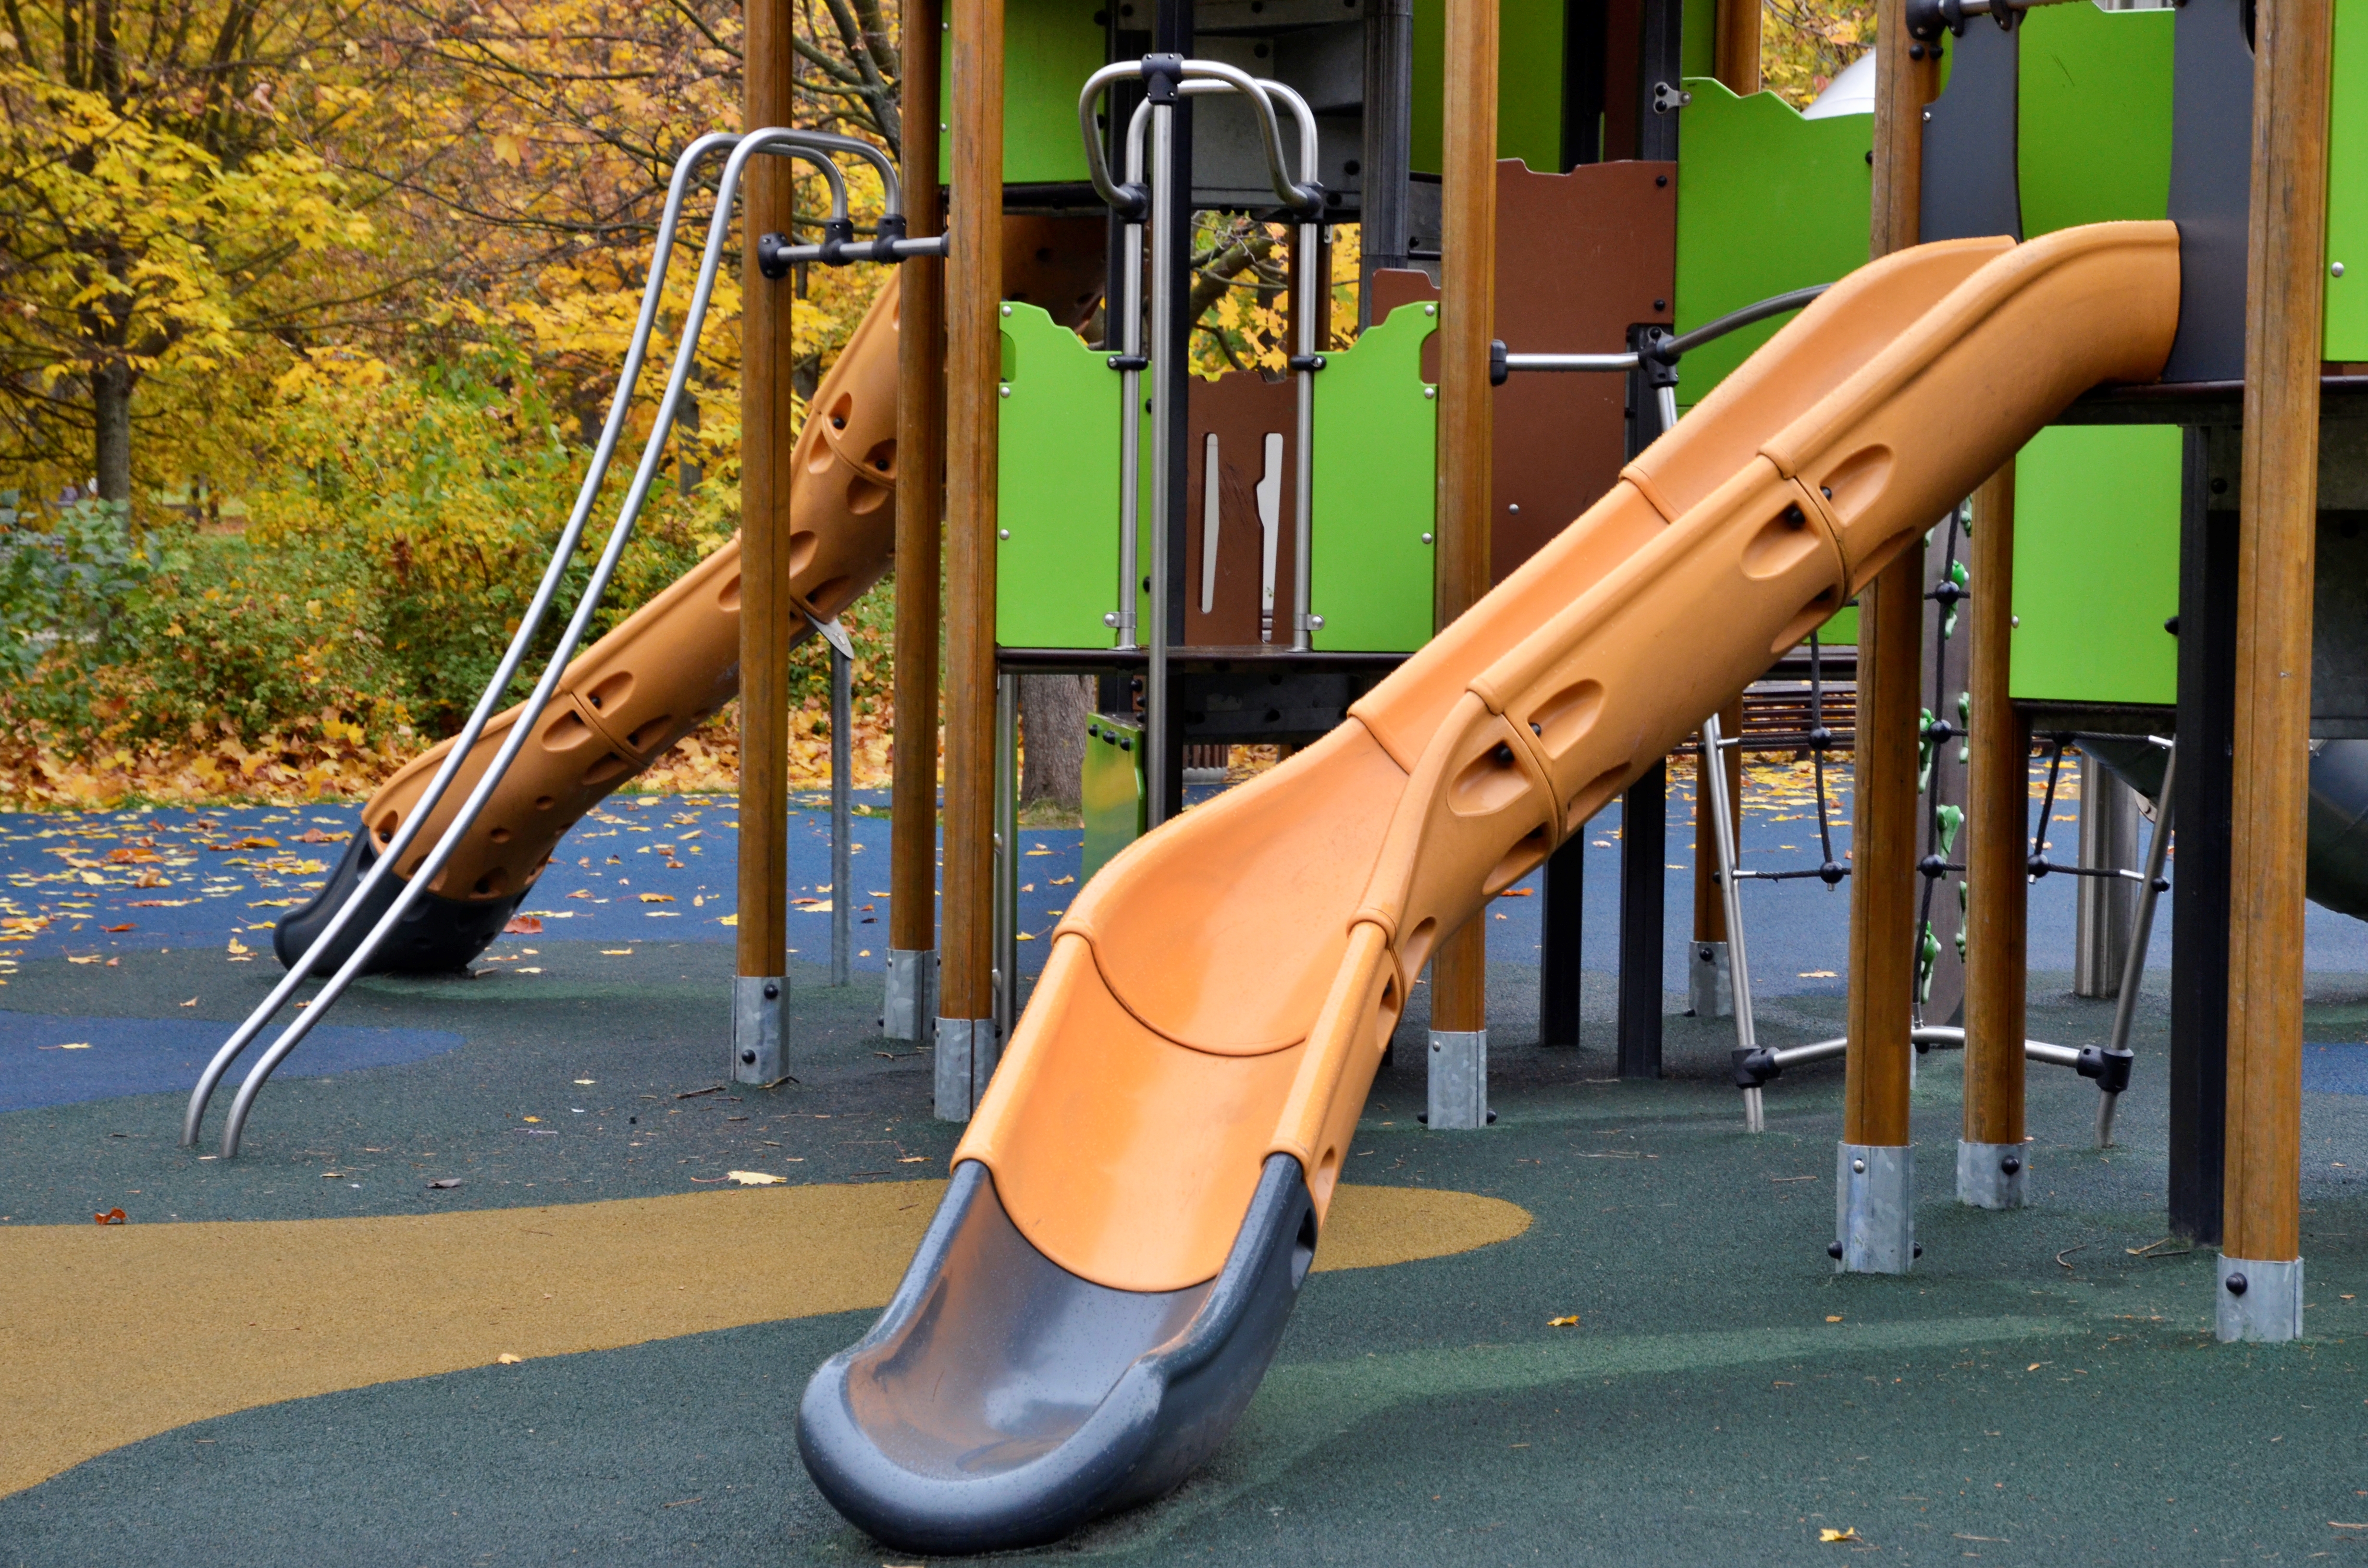 Игровые элементы обновят на детских площадках в Замоскворечье. Фото: Анна Быкова